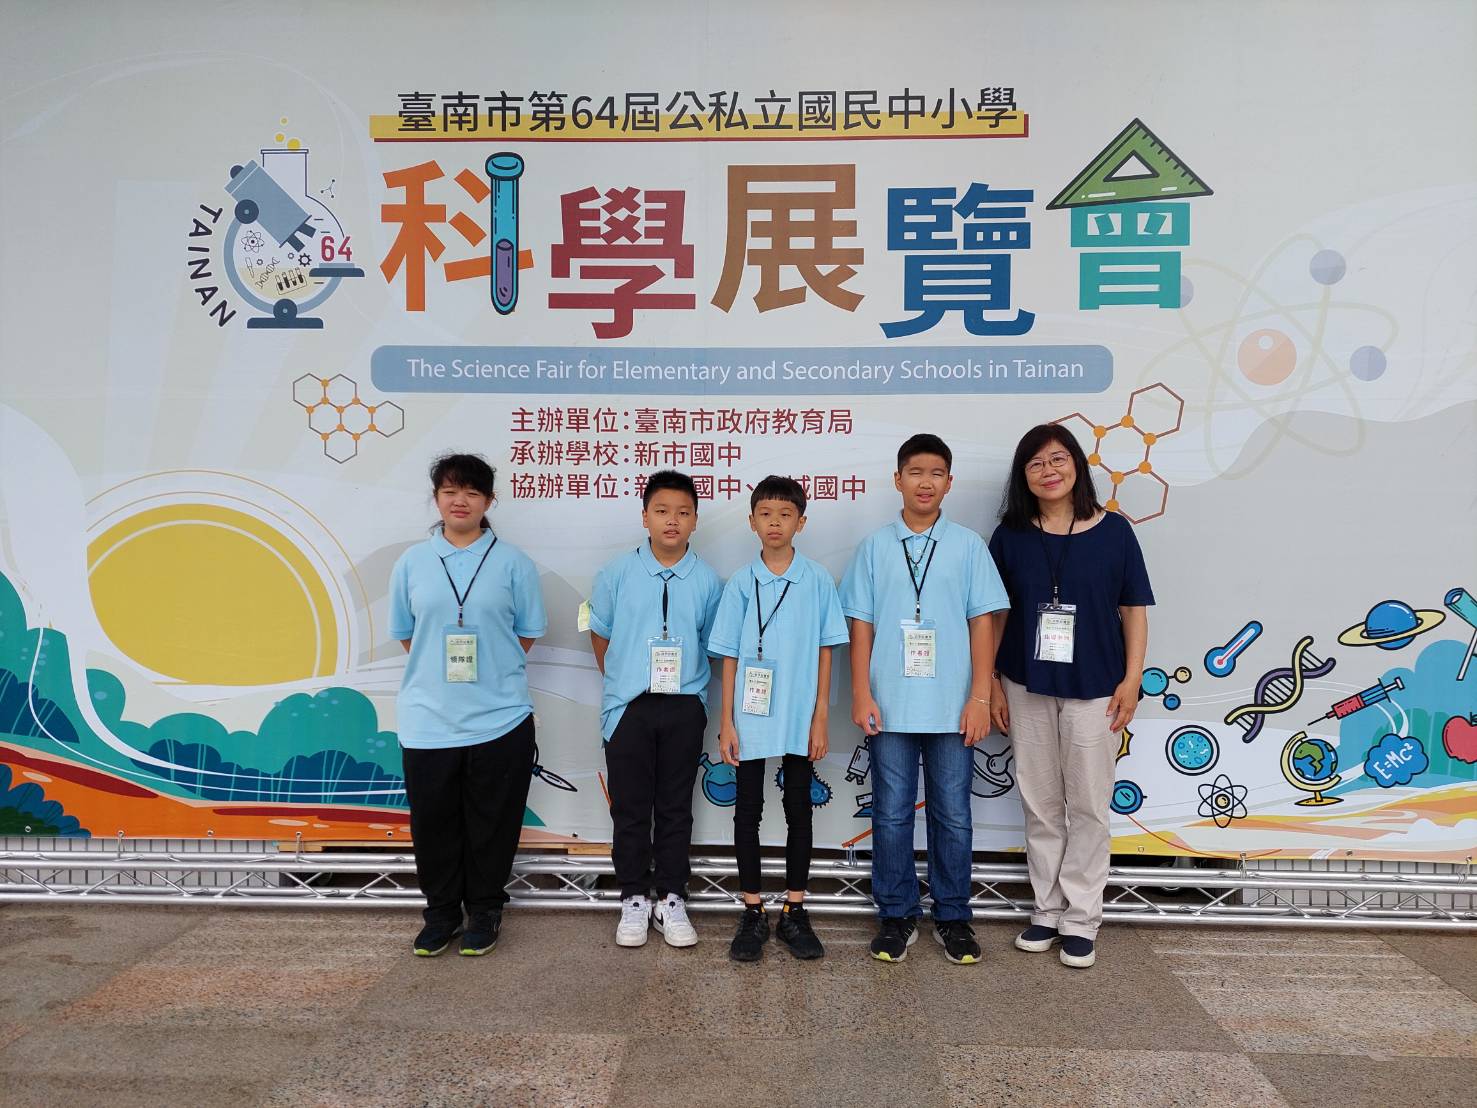 恭喜科展團隊榮獲臺南市第64屆國民中小學生應用科學科(二)第二名。